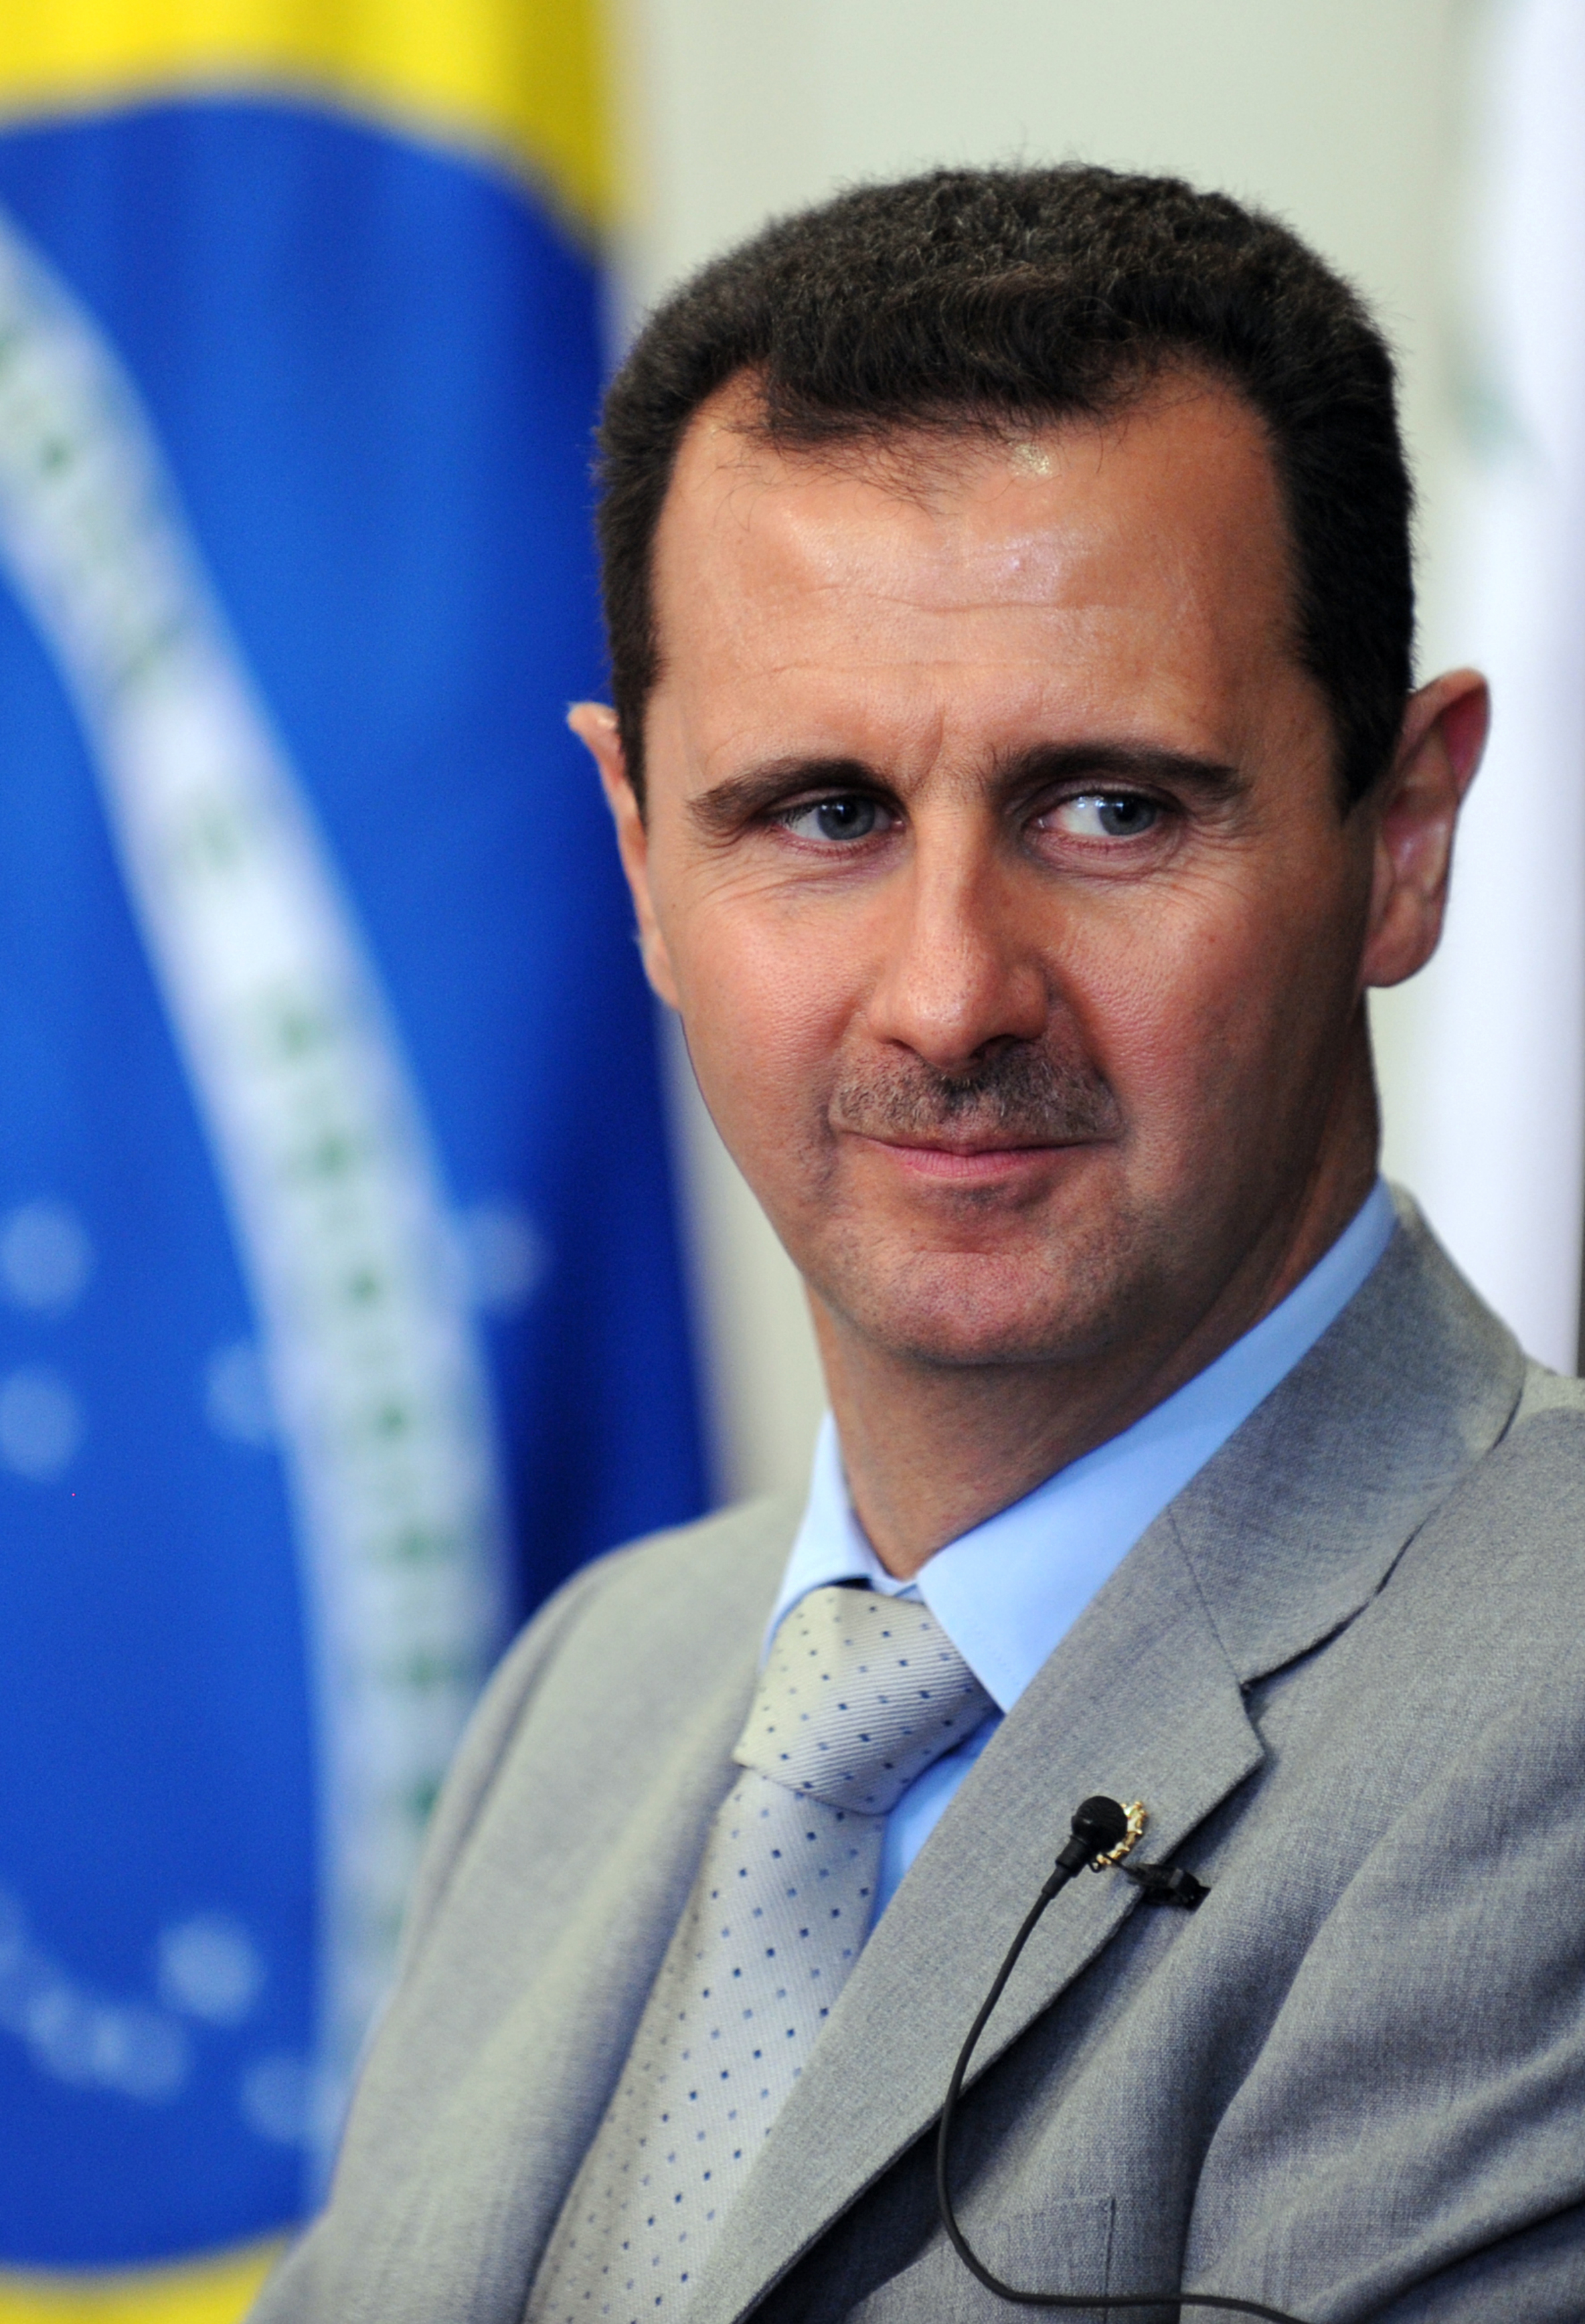 Évolution du conflit syrien, quel avenir pour Bachar el-Assad et le régime ?